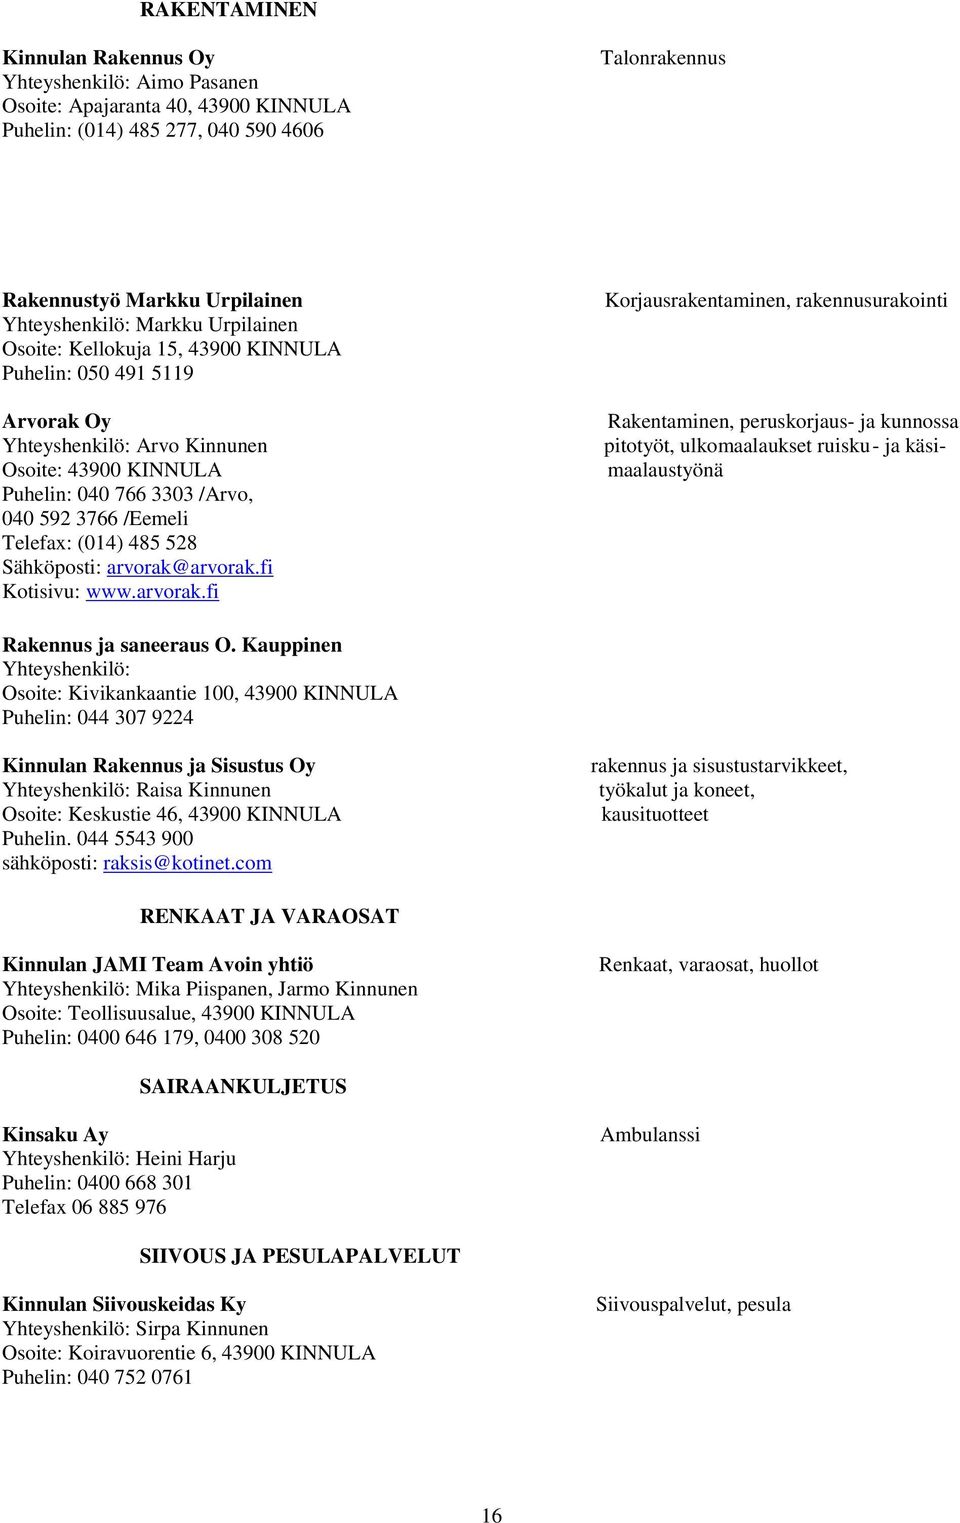 (014) 485 528 Sähköposti: arvorak@arvorak.fi Kotisivu: www.arvorak.fi Korjausrakentaminen, rakennusurakointi Rakentaminen, peruskorjaus- ja kunnossa pitotyöt, ulkomaalaukset ruisku- ja käsimaalaustyönä Rakennus ja saneeraus O.